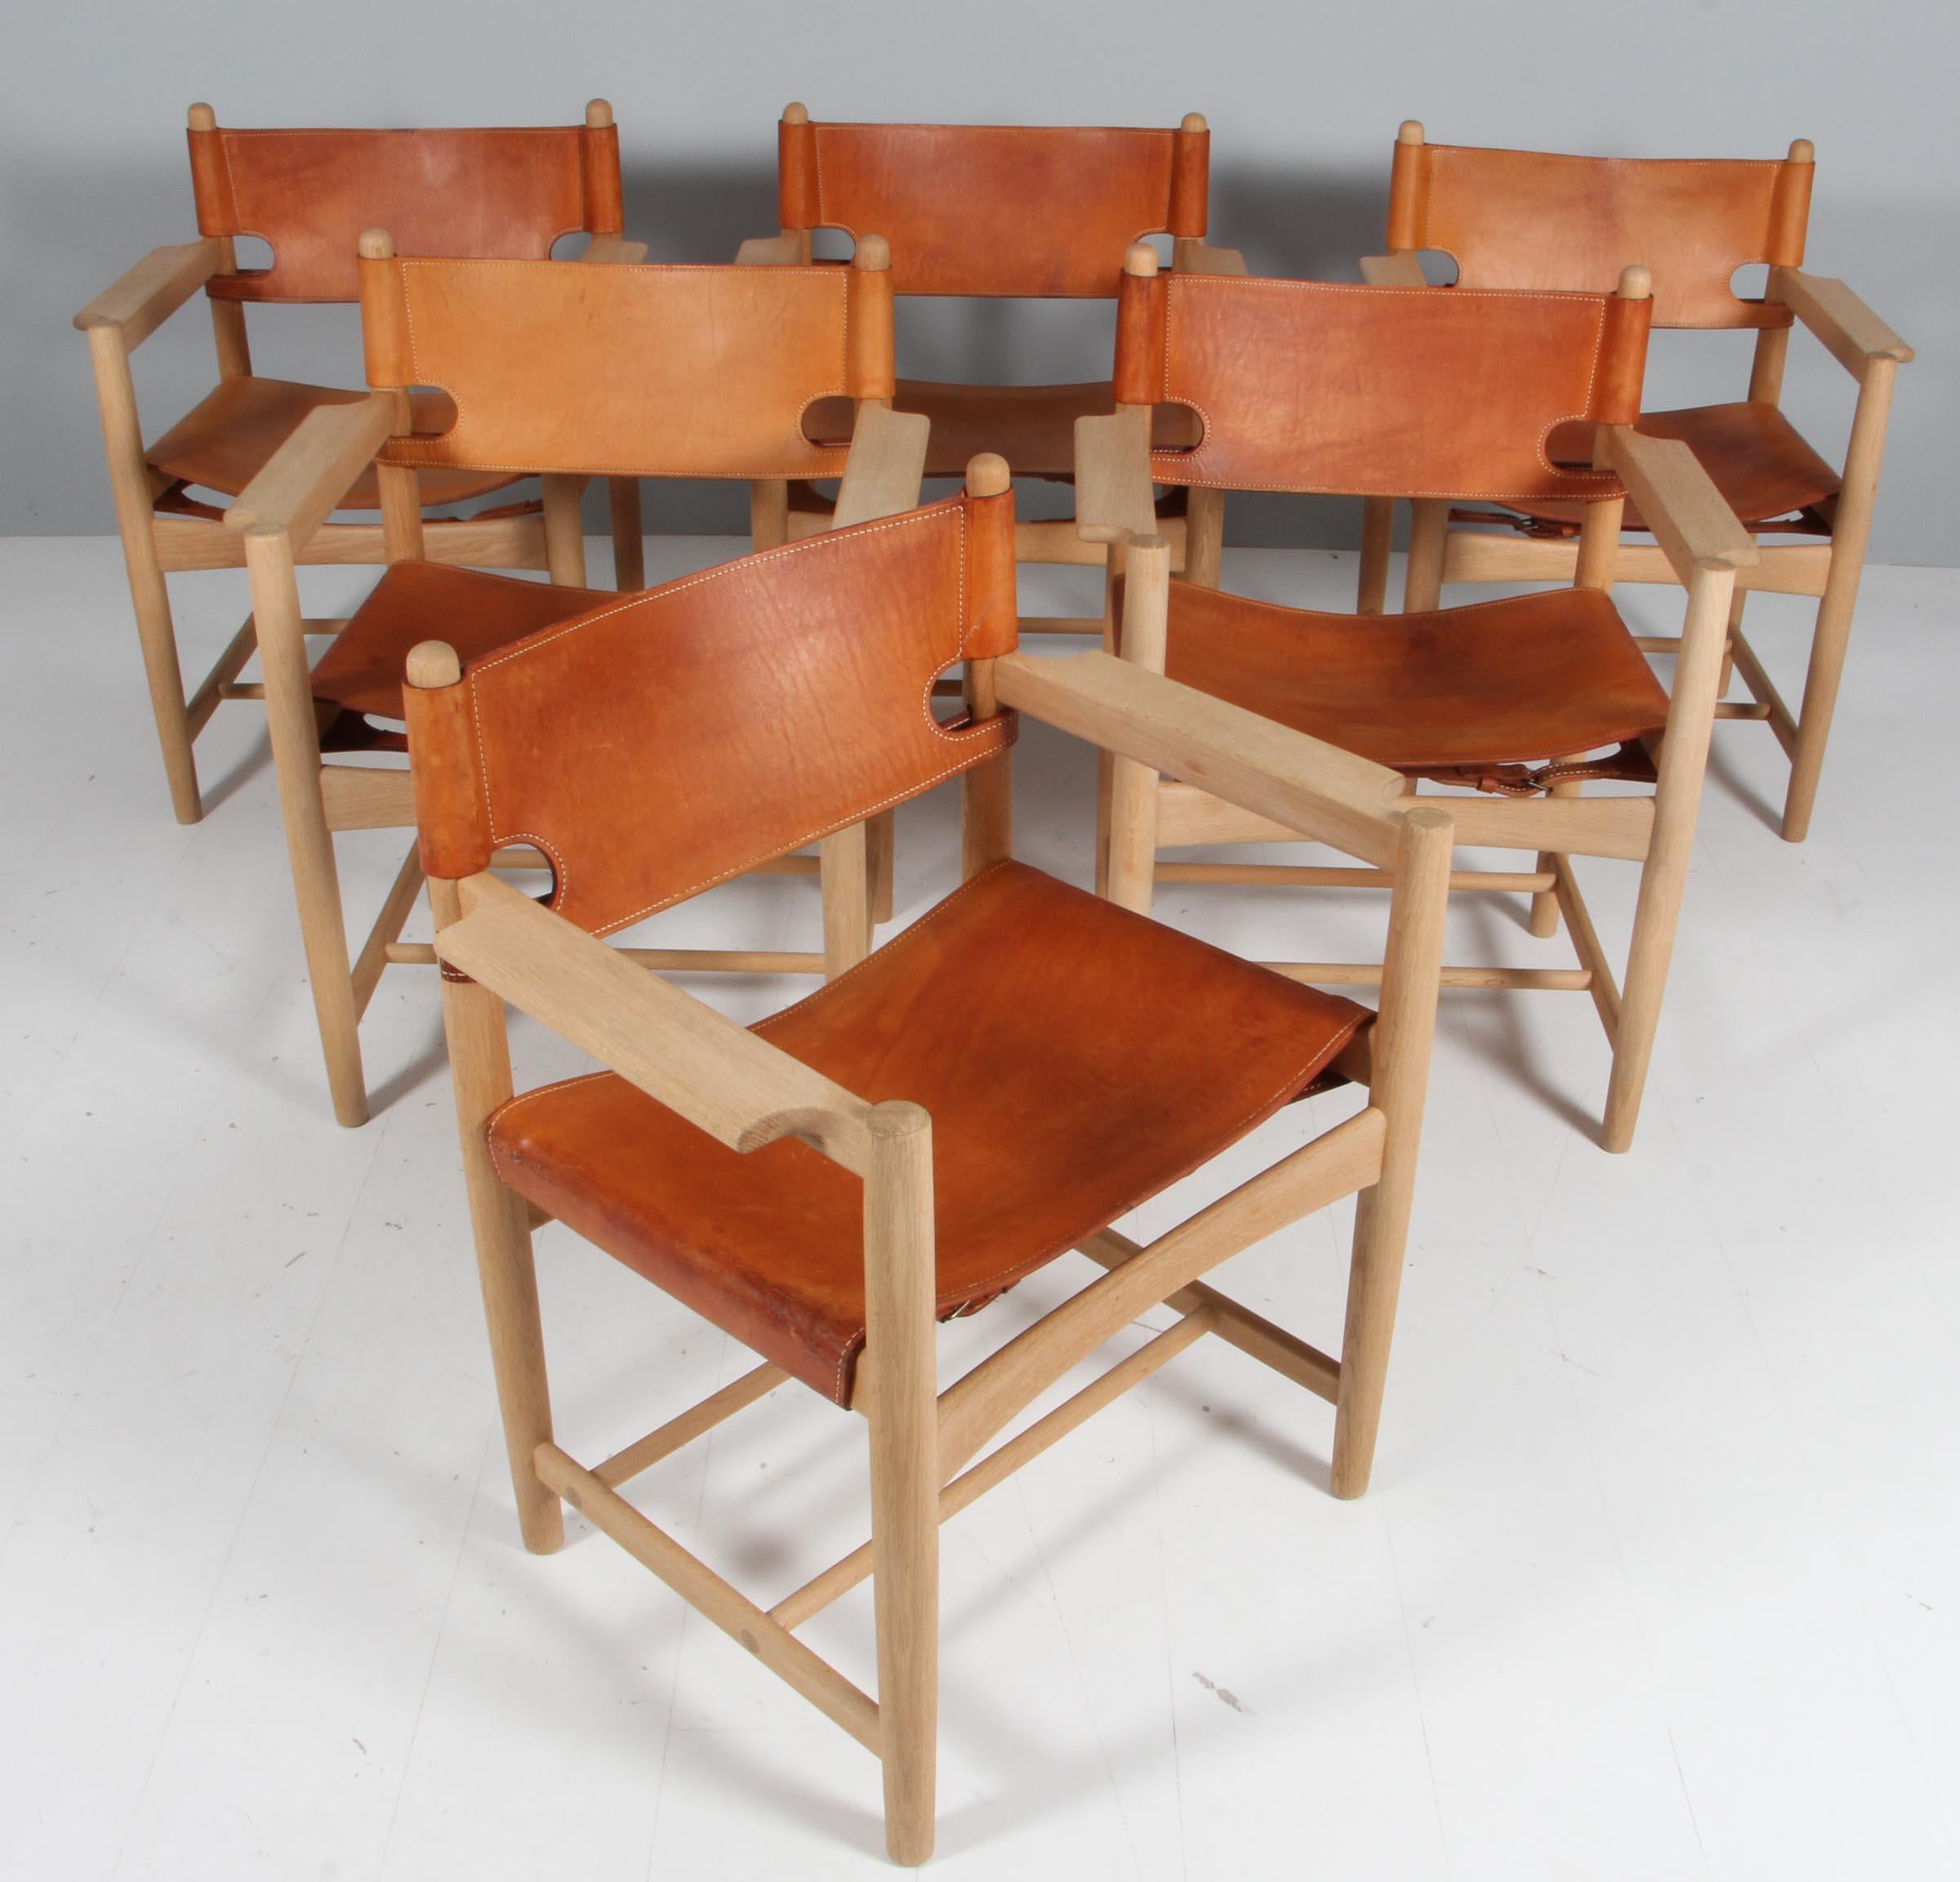 Børge Mogensen pour Fredericia Stolefabrik, ensemble de 6 fauteuils modèle 3238, en chêne et cuir, Danemark, 1964.

Ensemble de six fauteuils en chêne massif. Ces chaises rappellent les 